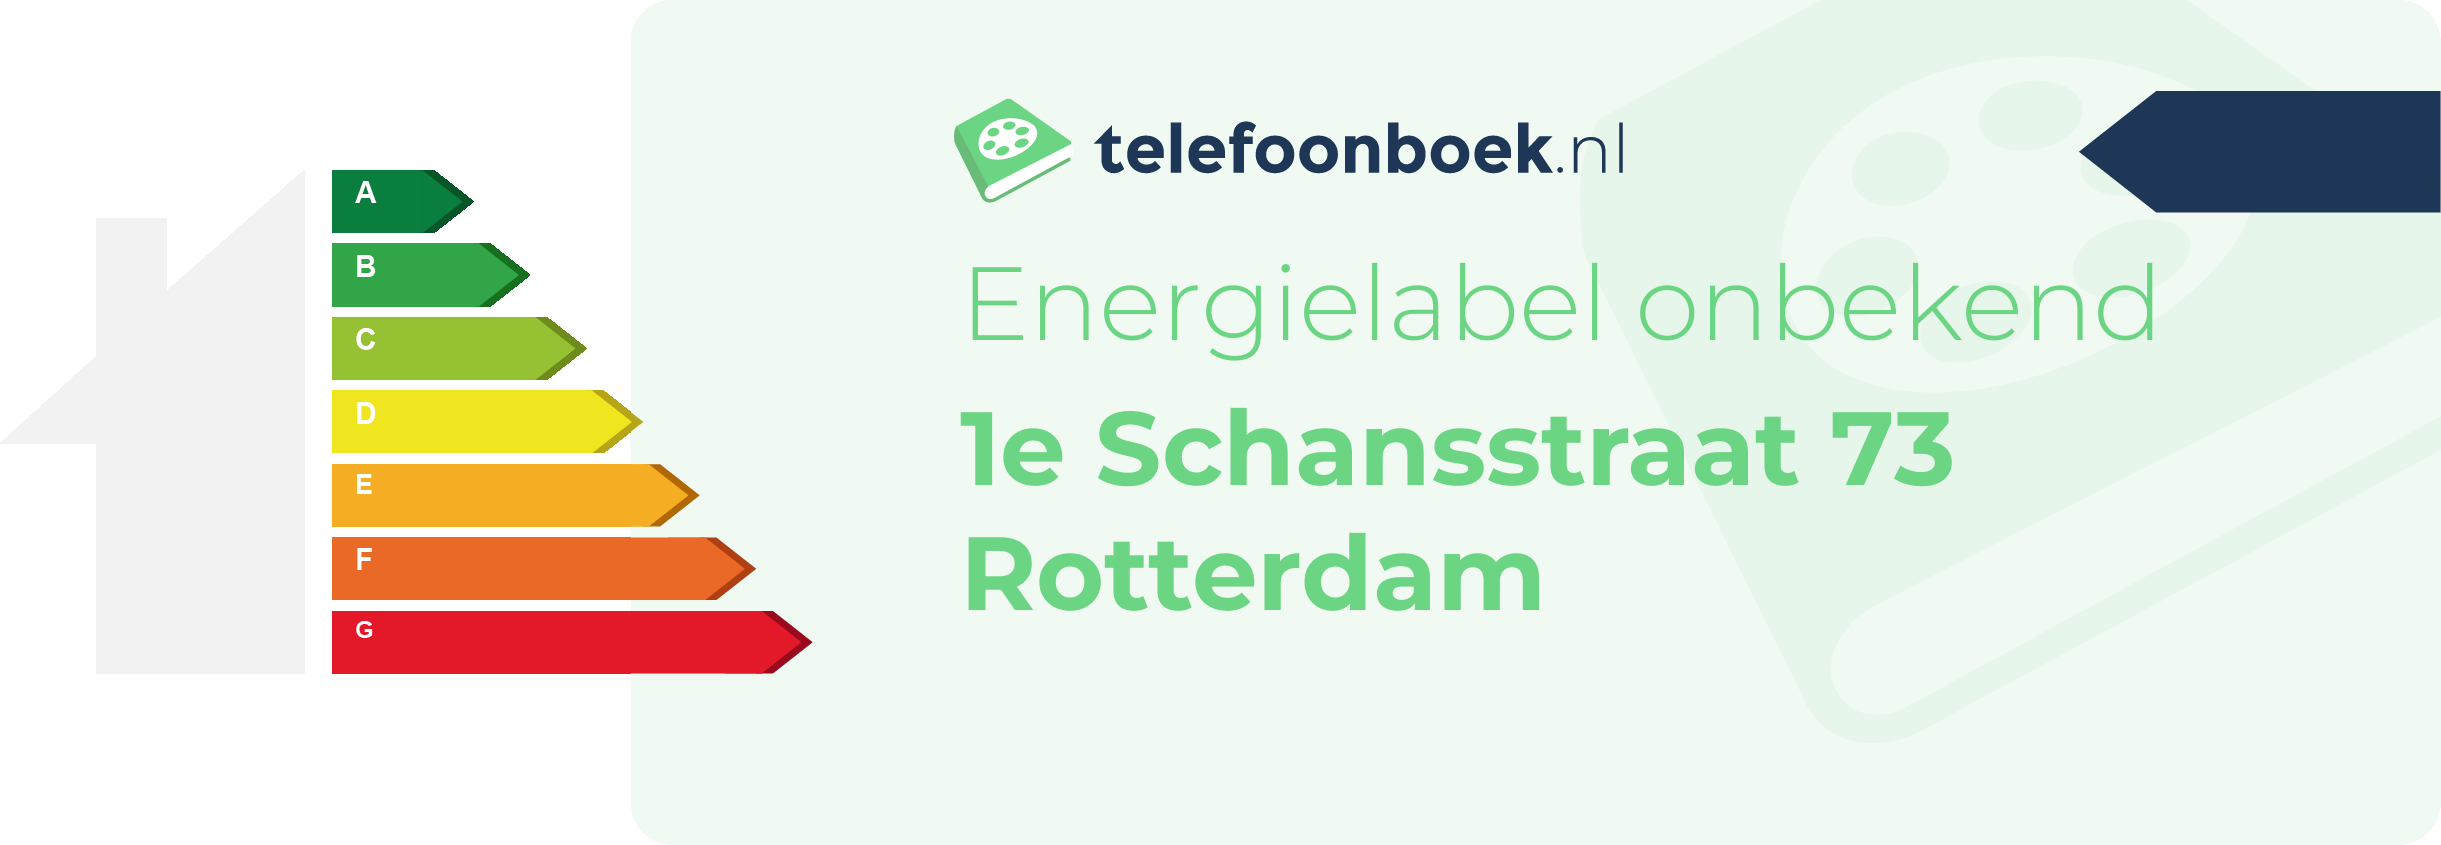 Energielabel 1e Schansstraat 73 Rotterdam